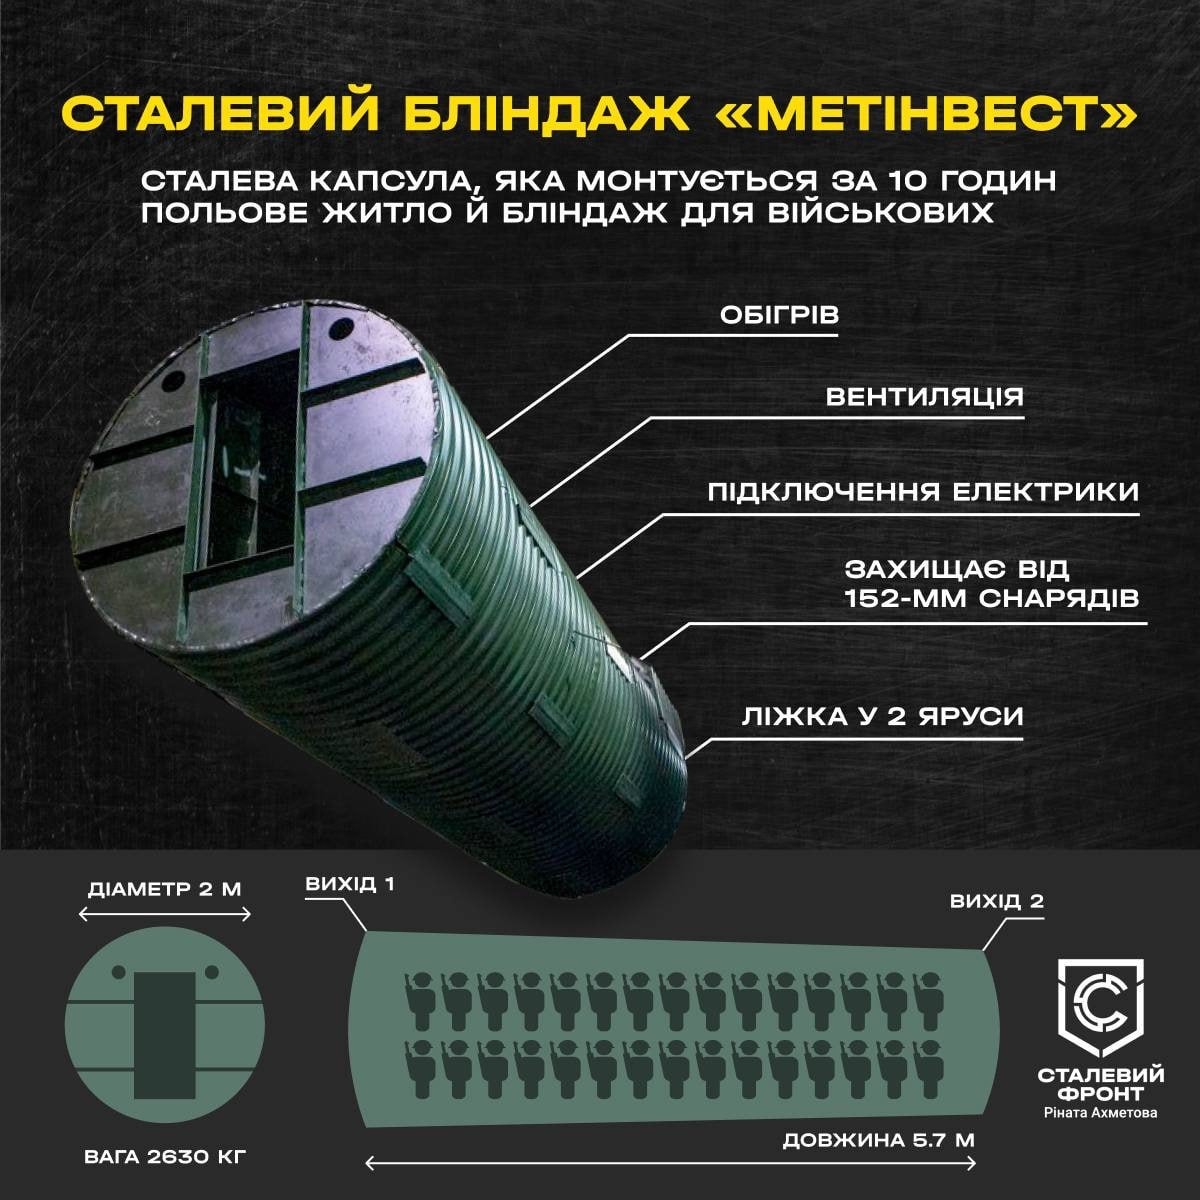 Инфографика: пресс-служба группы "Метинвест"